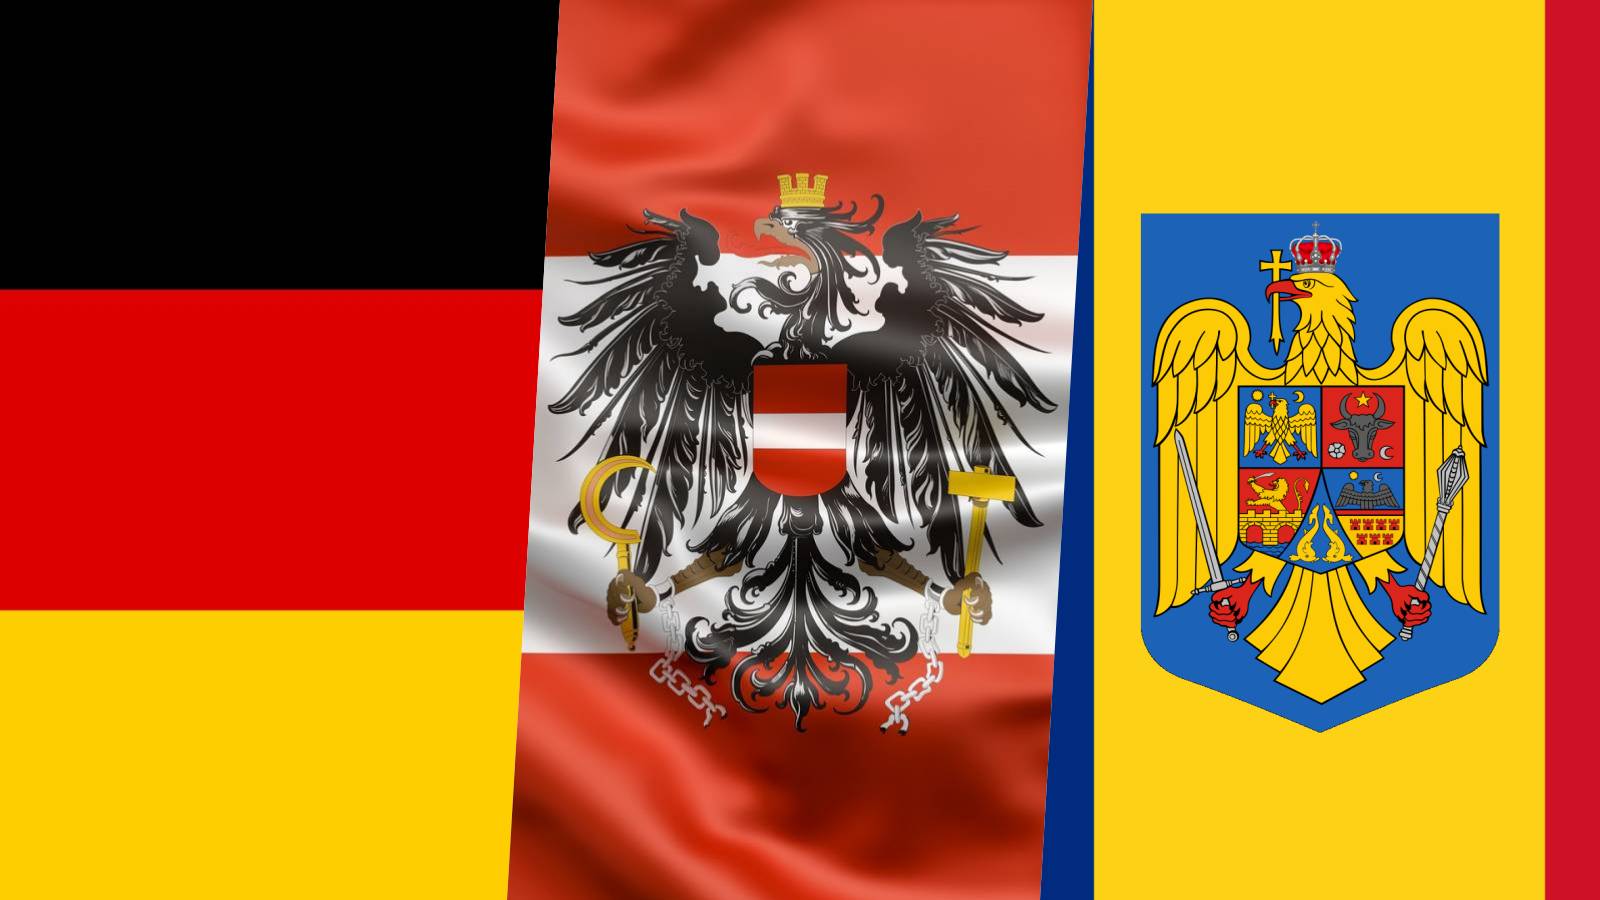 DRINGENDE verzoeken van Oostenrijk Duitsland Roemenië Schengen gebeurt